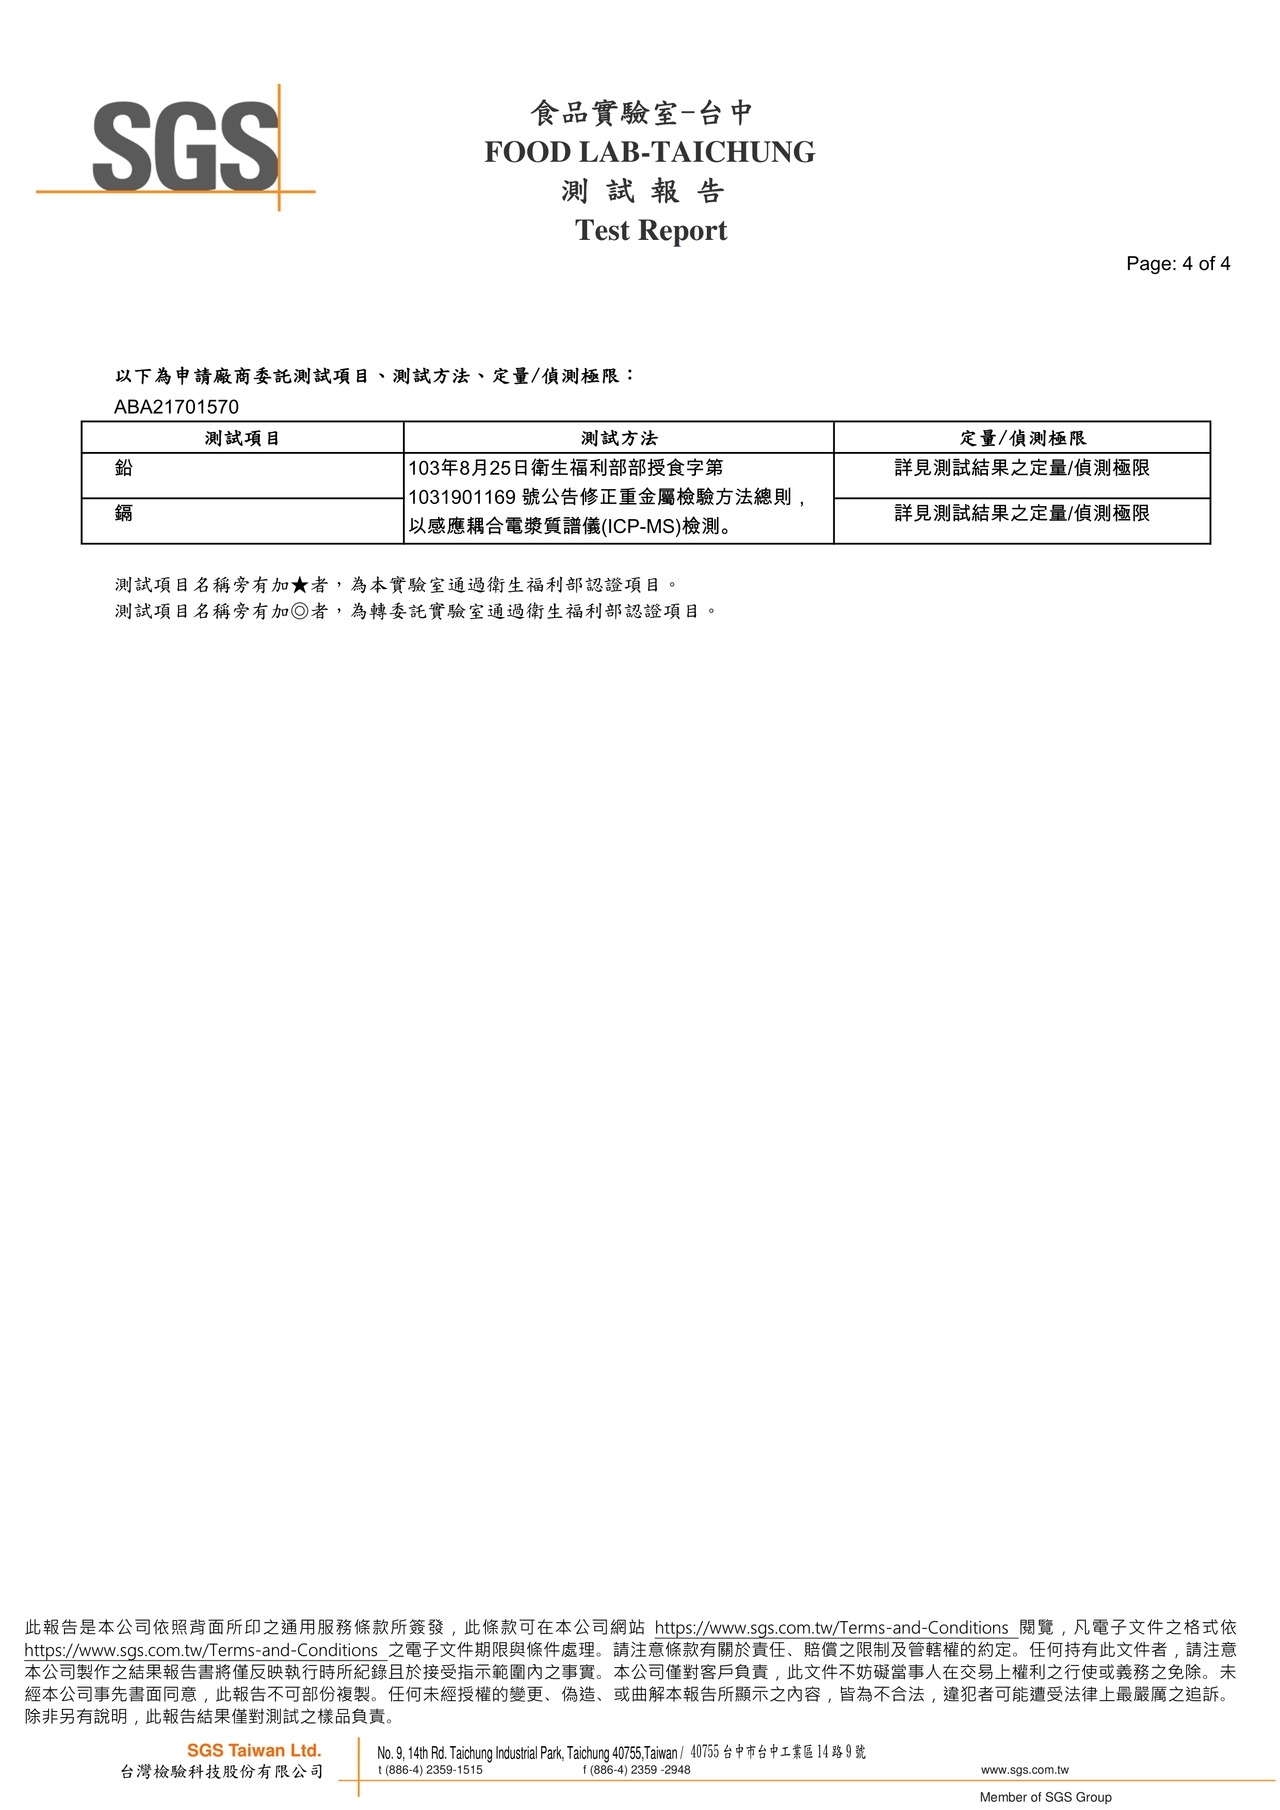 貝貝吻魚寶寶粥-重金屬(鉛鎘)檢驗報告2021.07.21